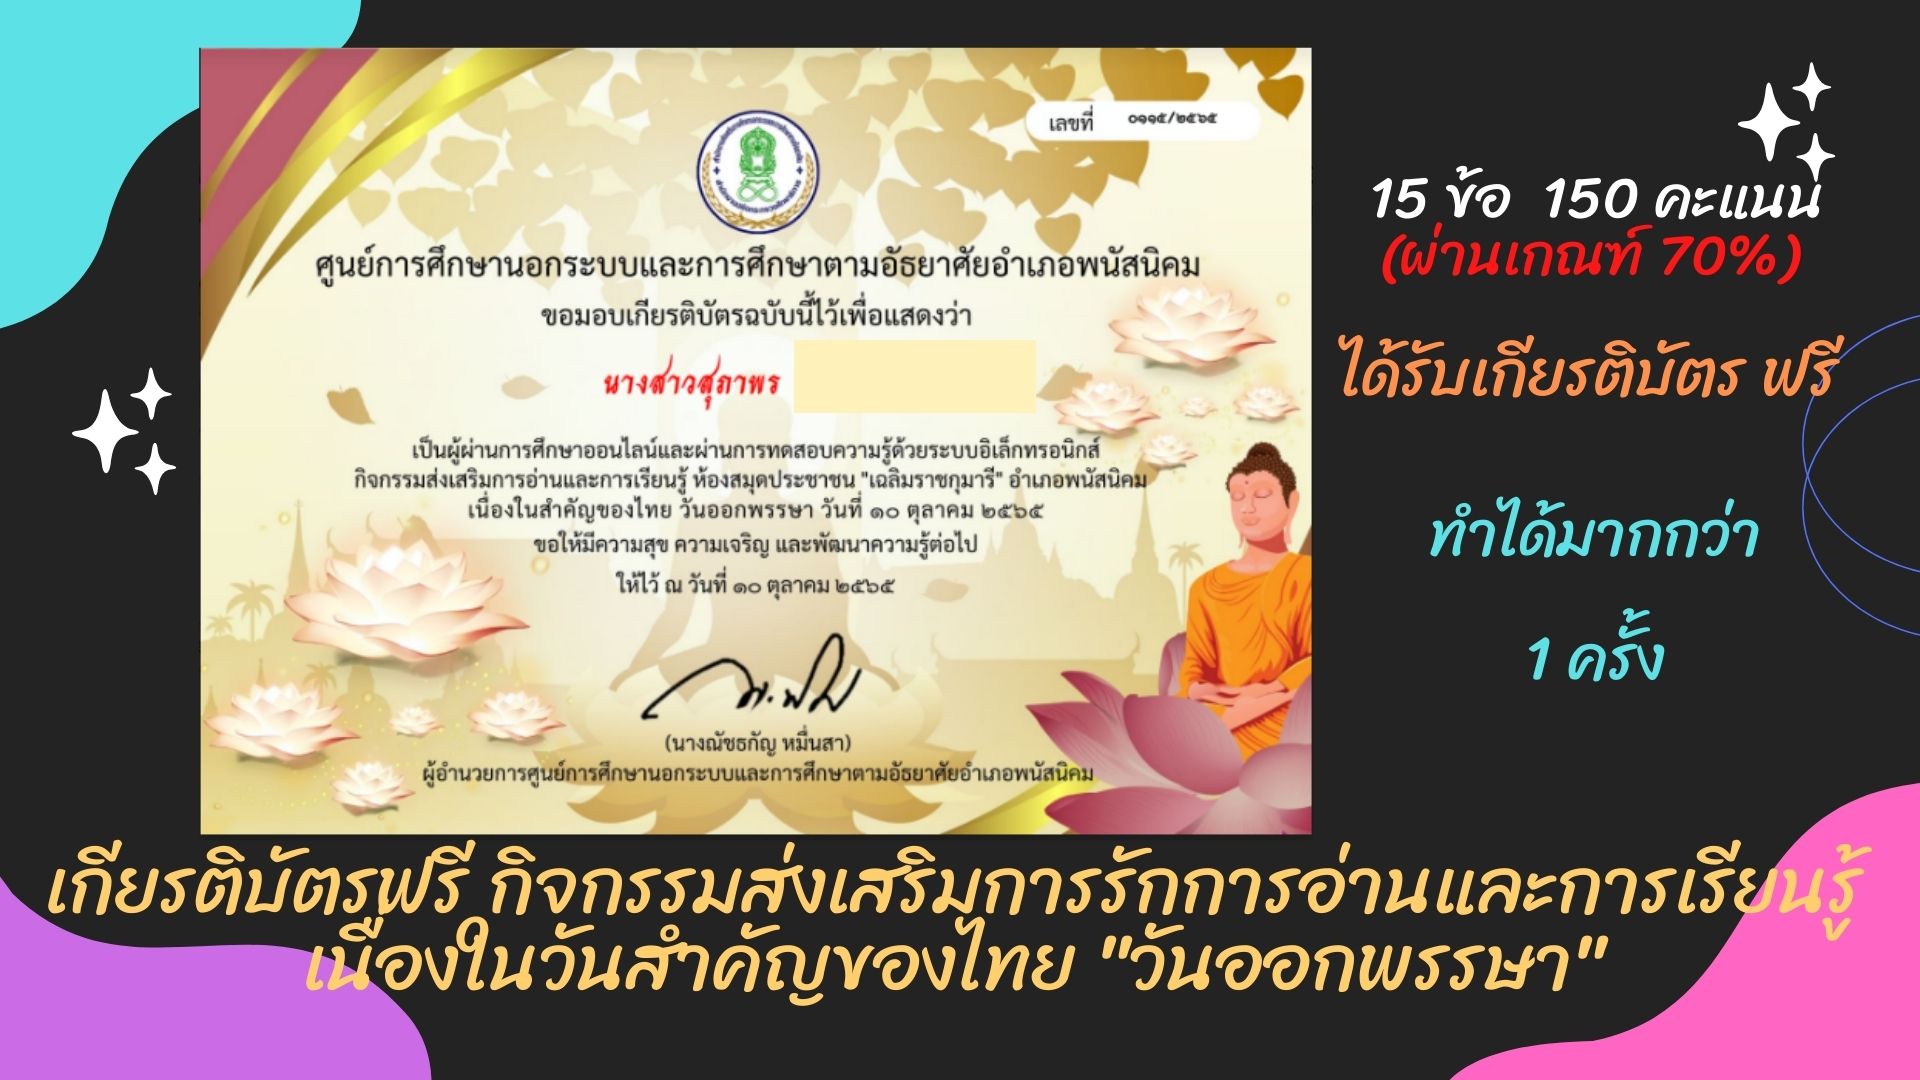 ทำข้อสอบออนไลน์ รับเกียรติบัตรฟรี  กิจกรรมส่งเสริมการรักการอ่านและการเรียนรู้ เนื่องในวันสำคัญของไทย 